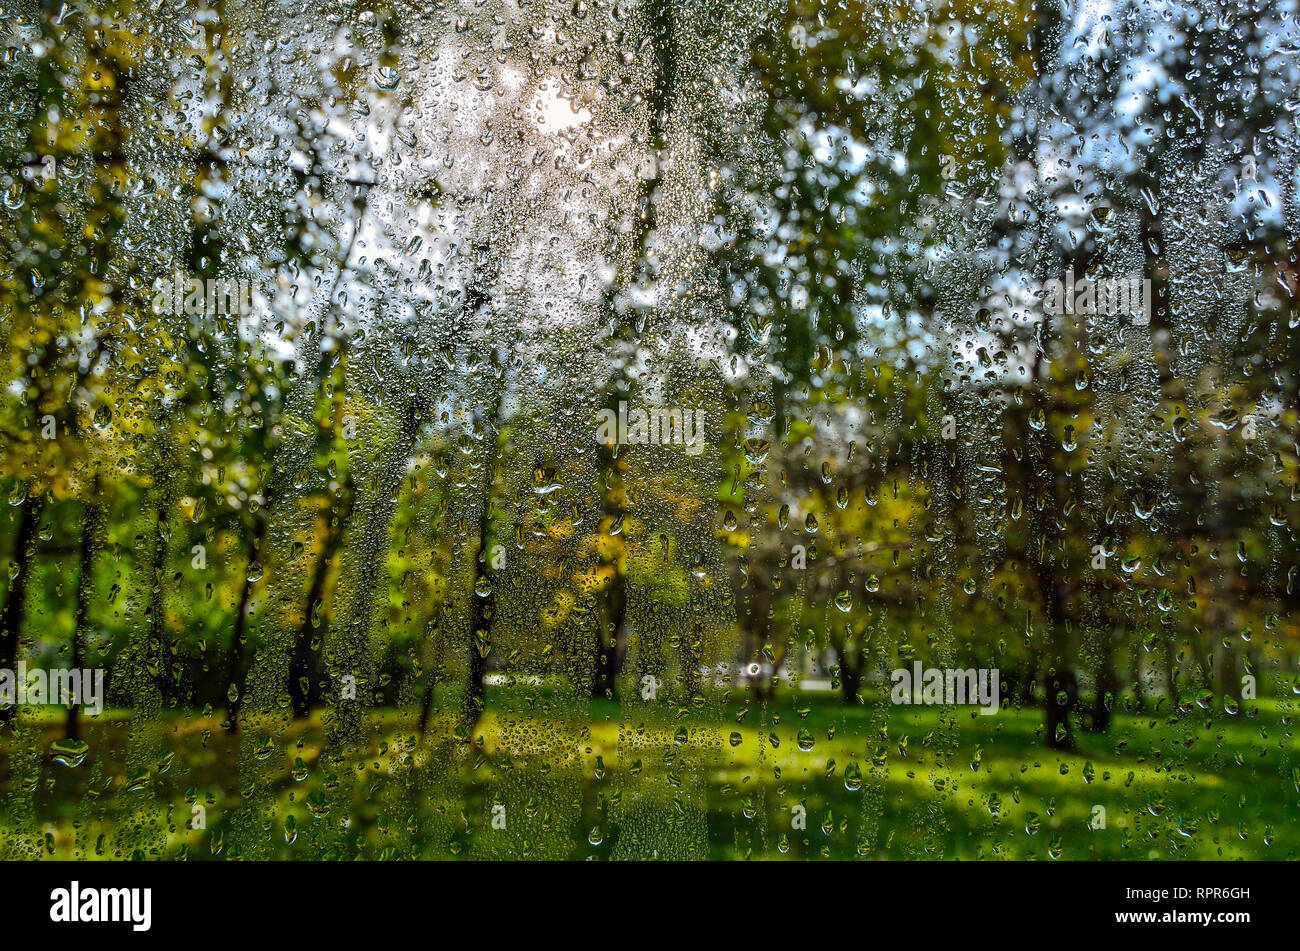 Helle, farbenfrohe Herbst verschwommenen Landschaft im City Park mit nassen Laub nach Regen durch nasses Fenster Glas mit Regentropfen. Regnerischen herbst Wetter und Stockfoto